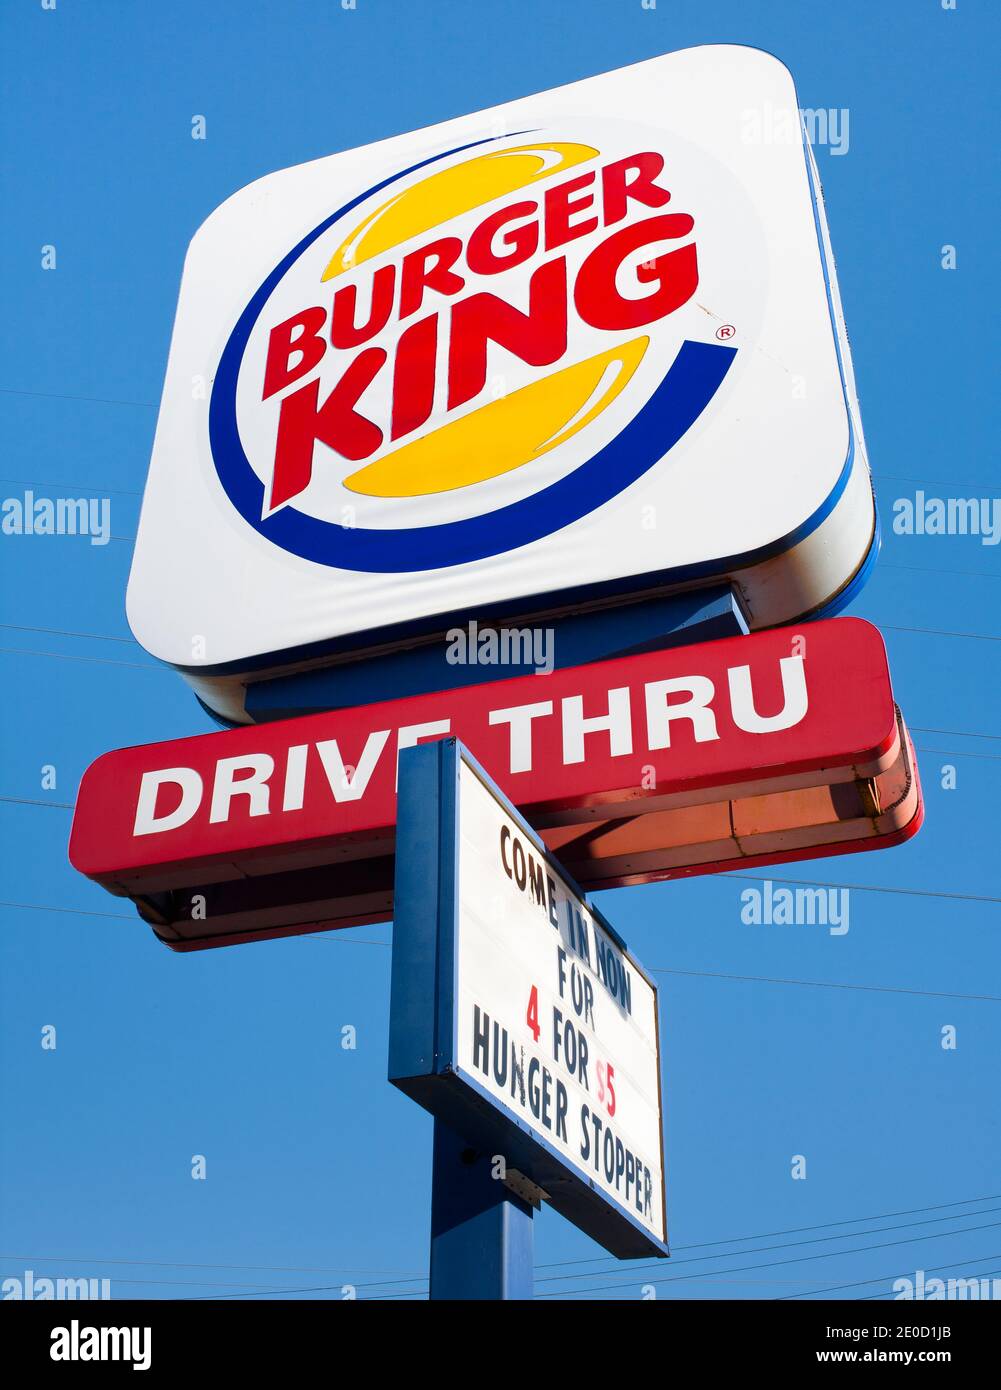 Dartmouth, Canada - 03 juillet 2016 : affiche de passage de roue Burger King. Burger King est une chaîne de restaurants rapides et est basé à Miami-Dade, FL, Etats-Unis. Banque D'Images